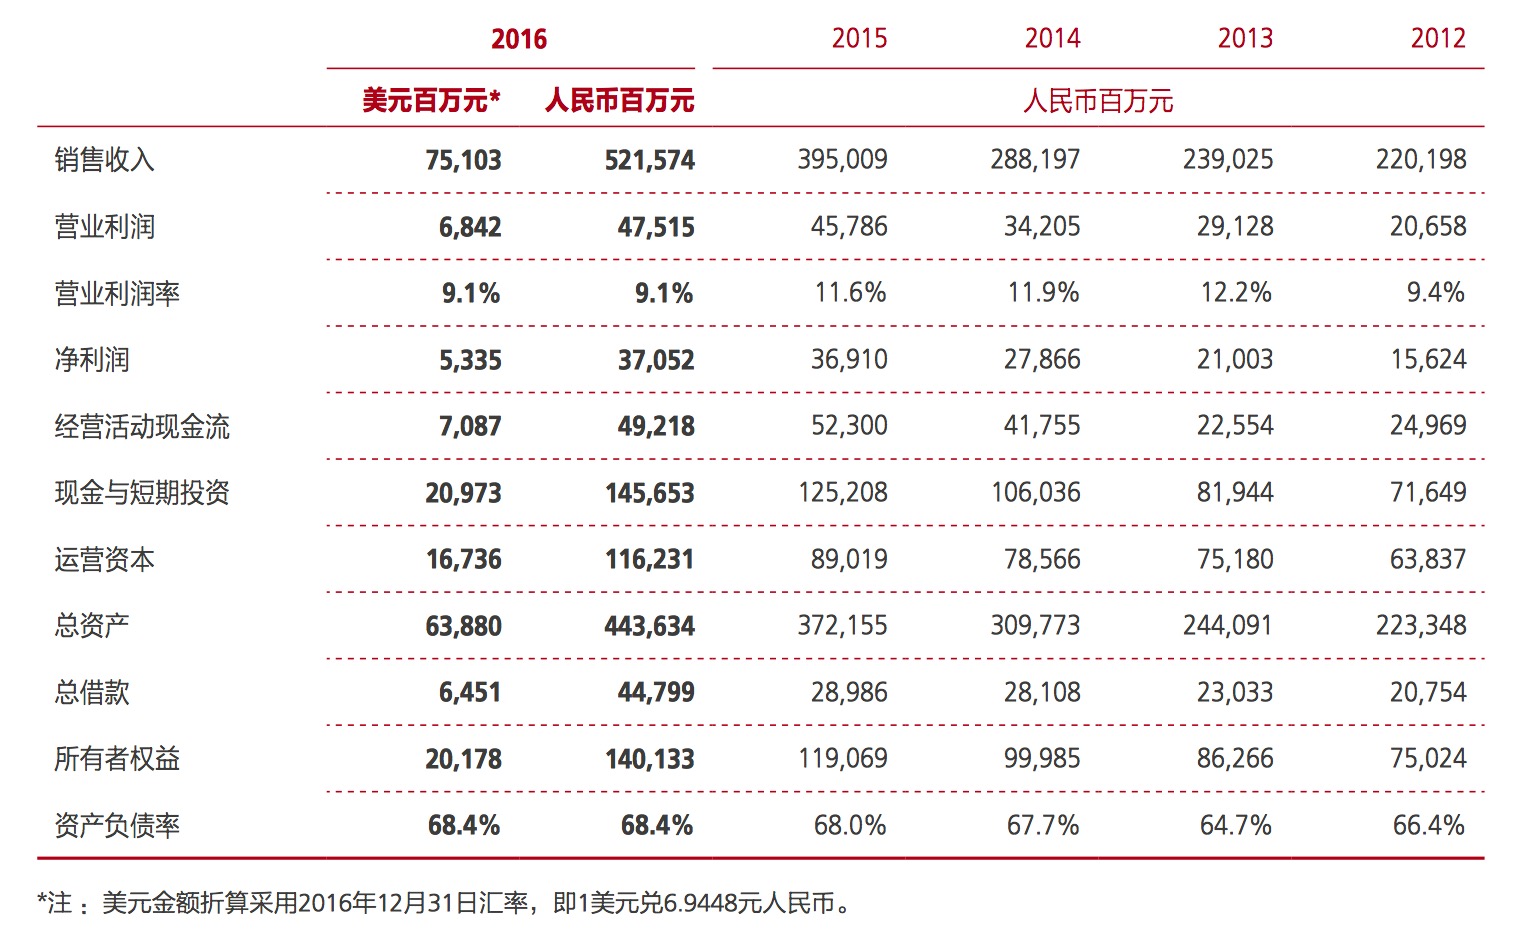 华为2016年年报解读:终端业务增长迅速,利润成焦点